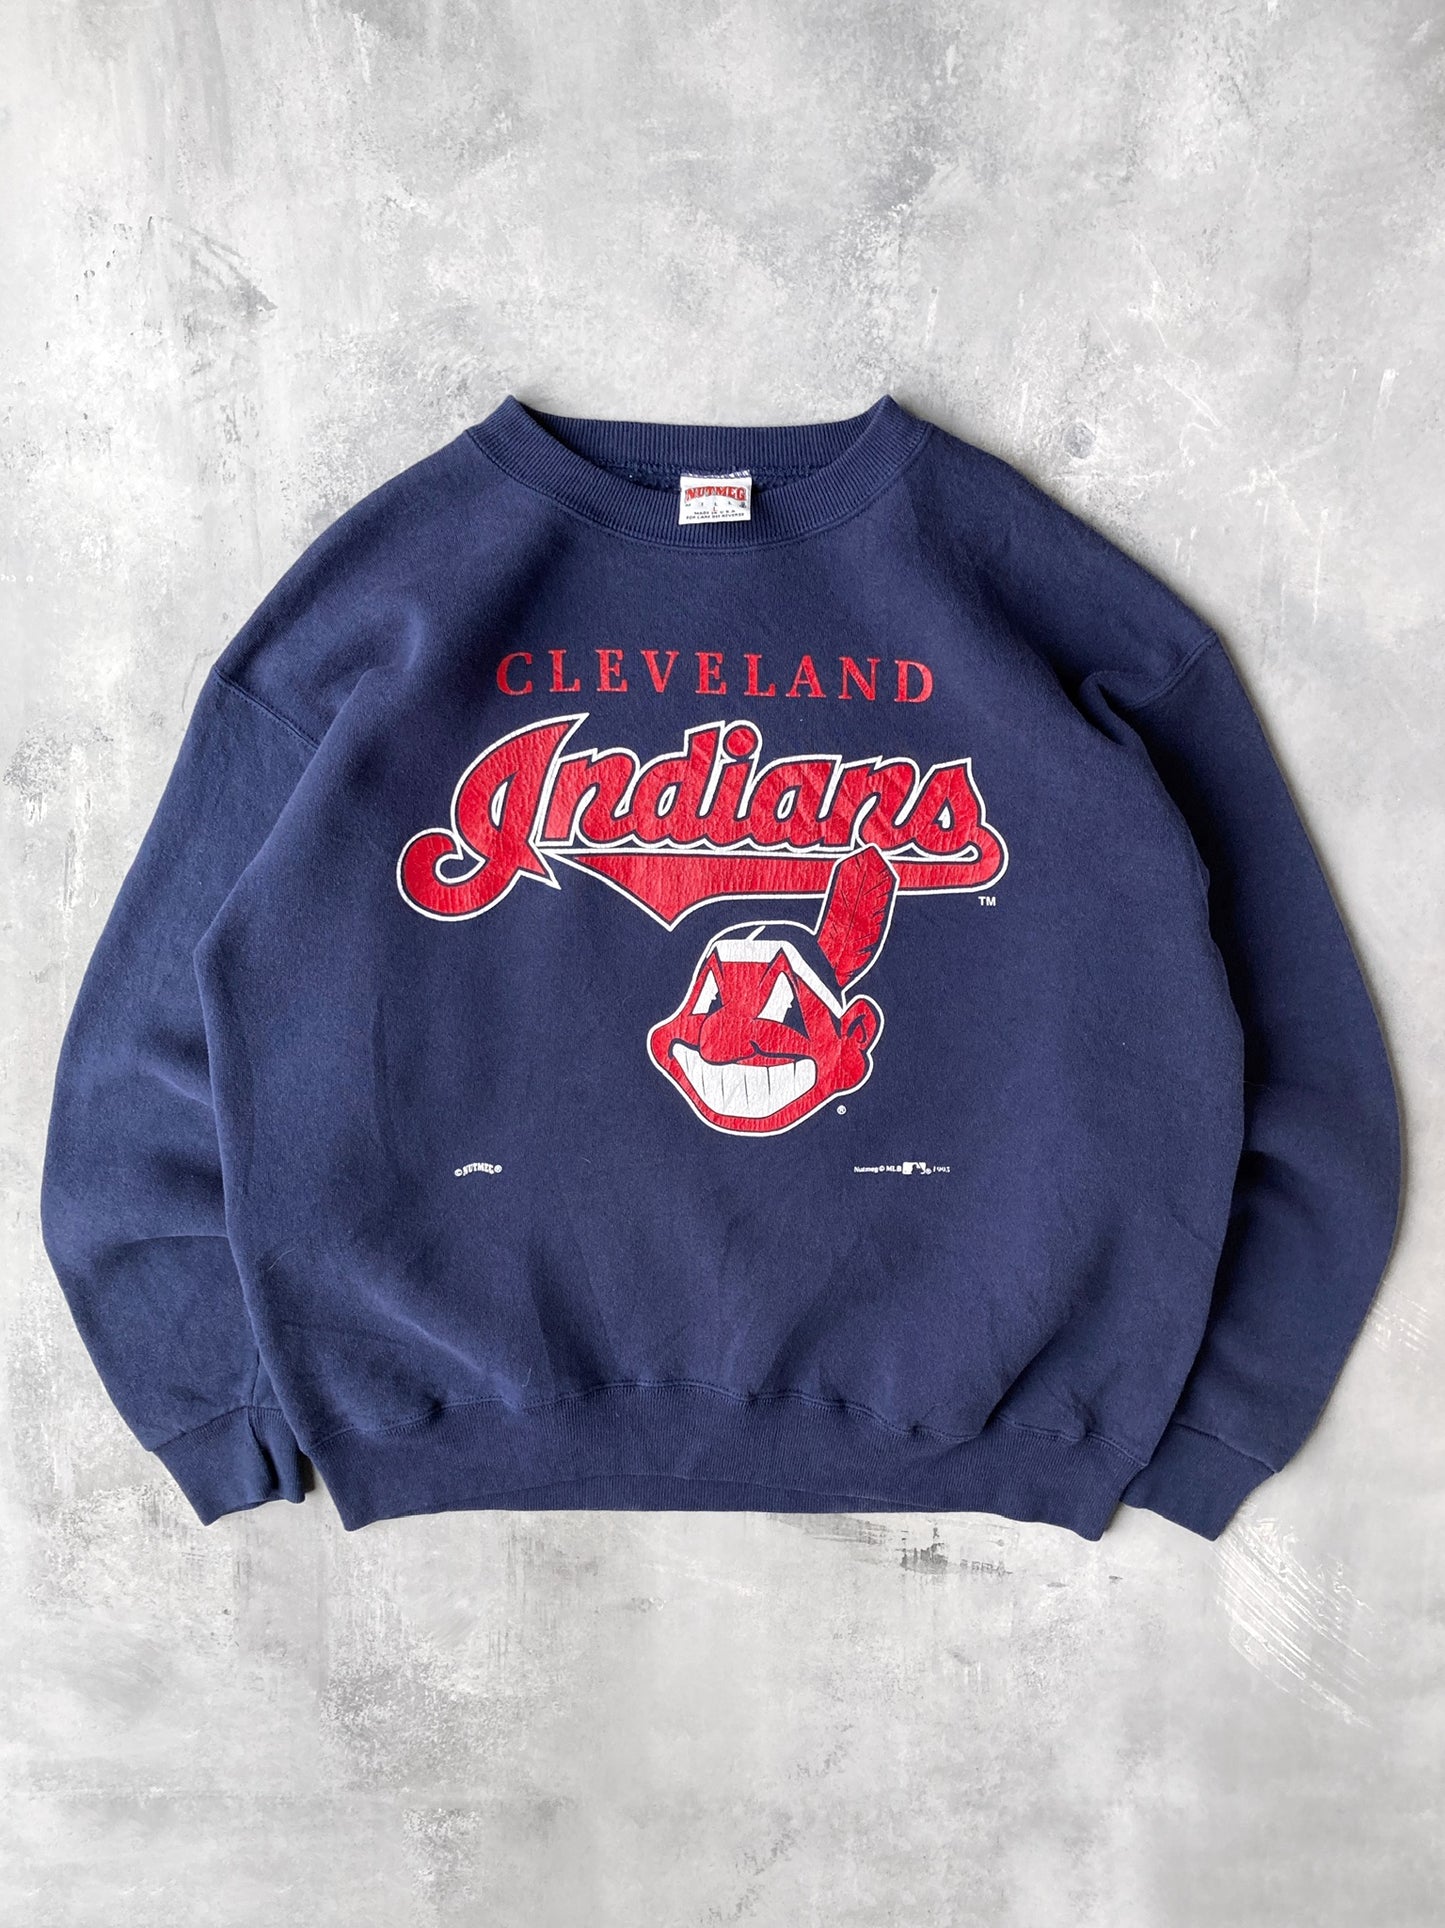 Cleveland Indians Sweatshirt '93 - Large